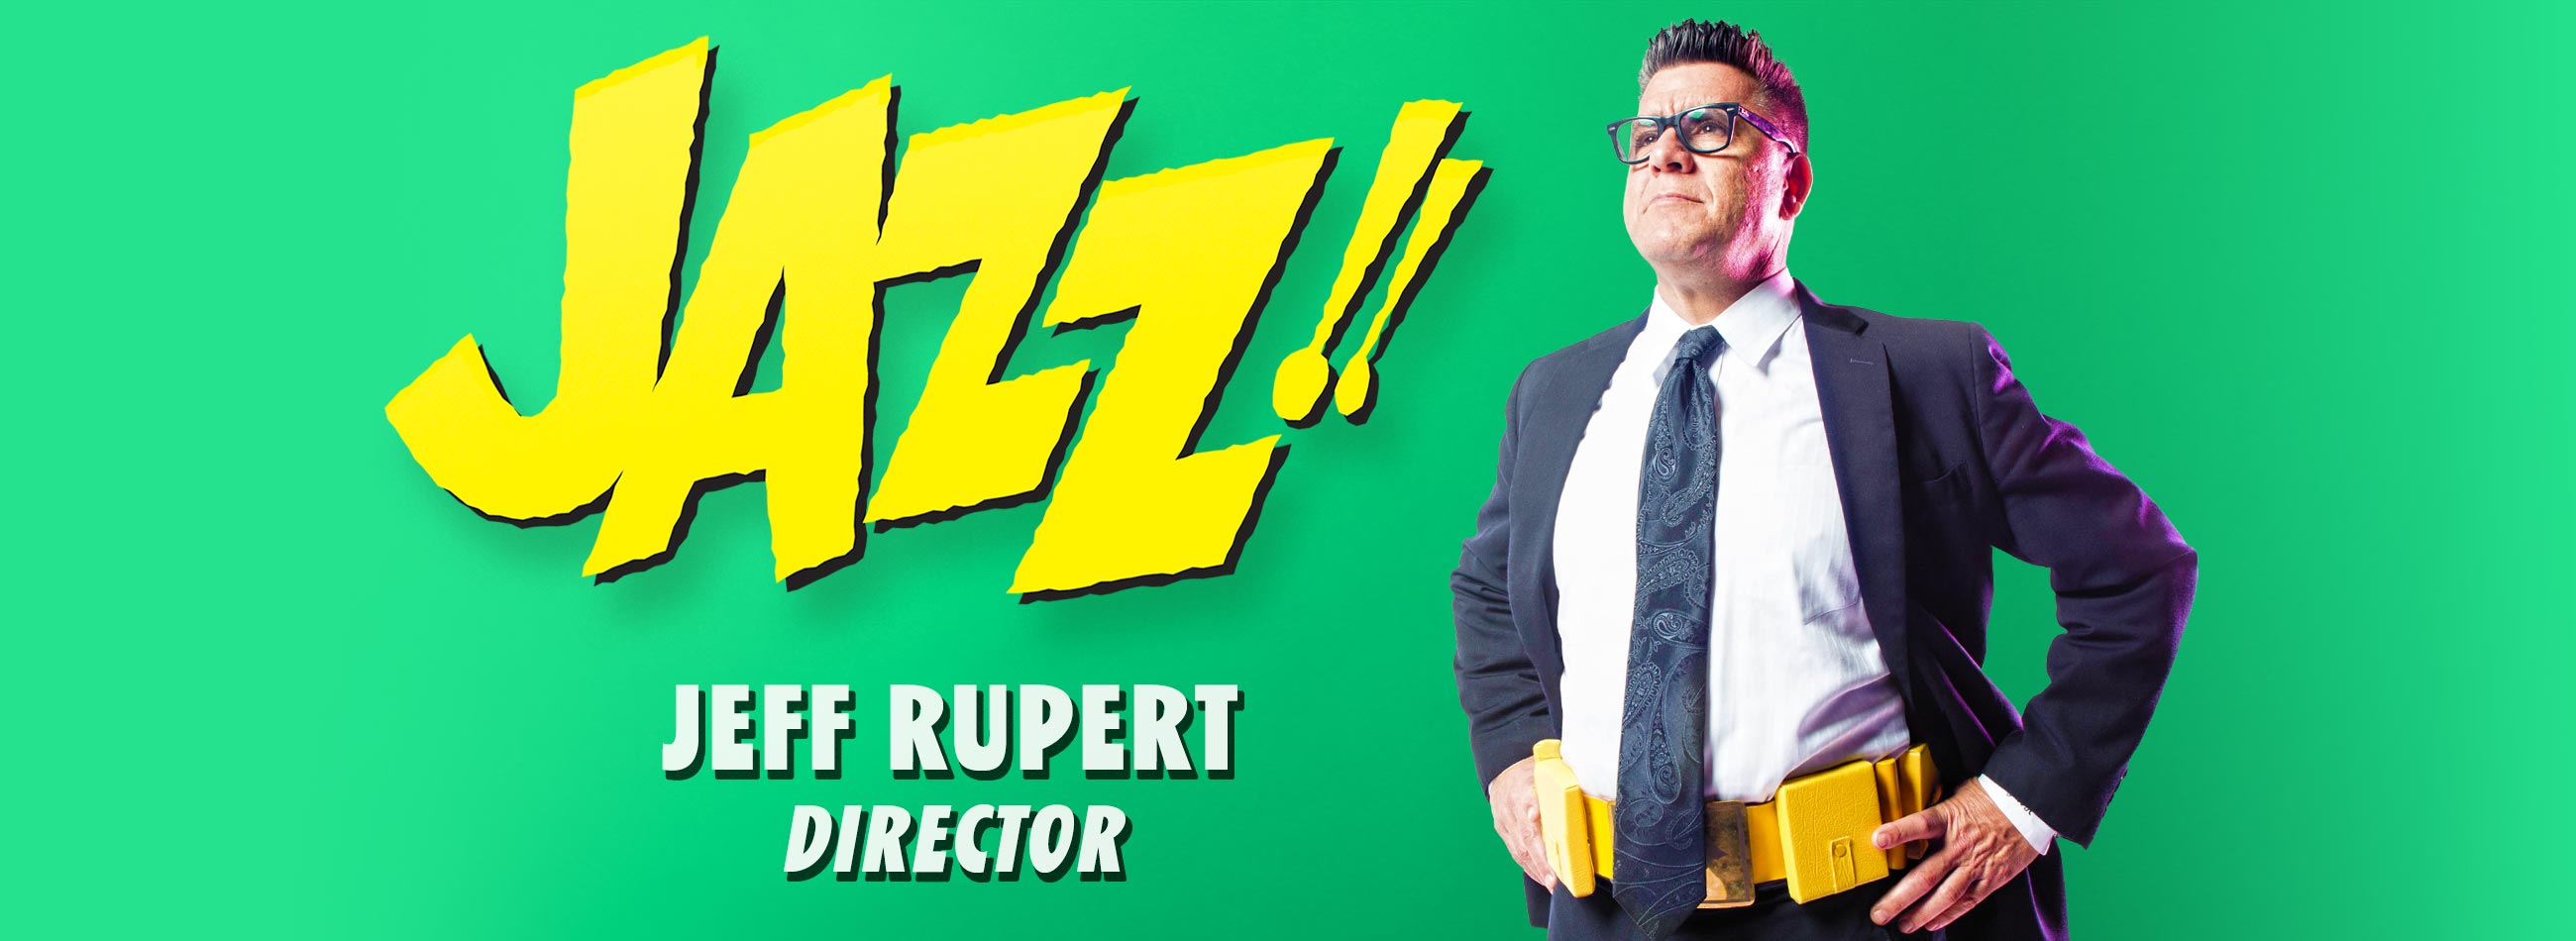 Director Jeff Rupert wears a utility belt next to JAZZ! text